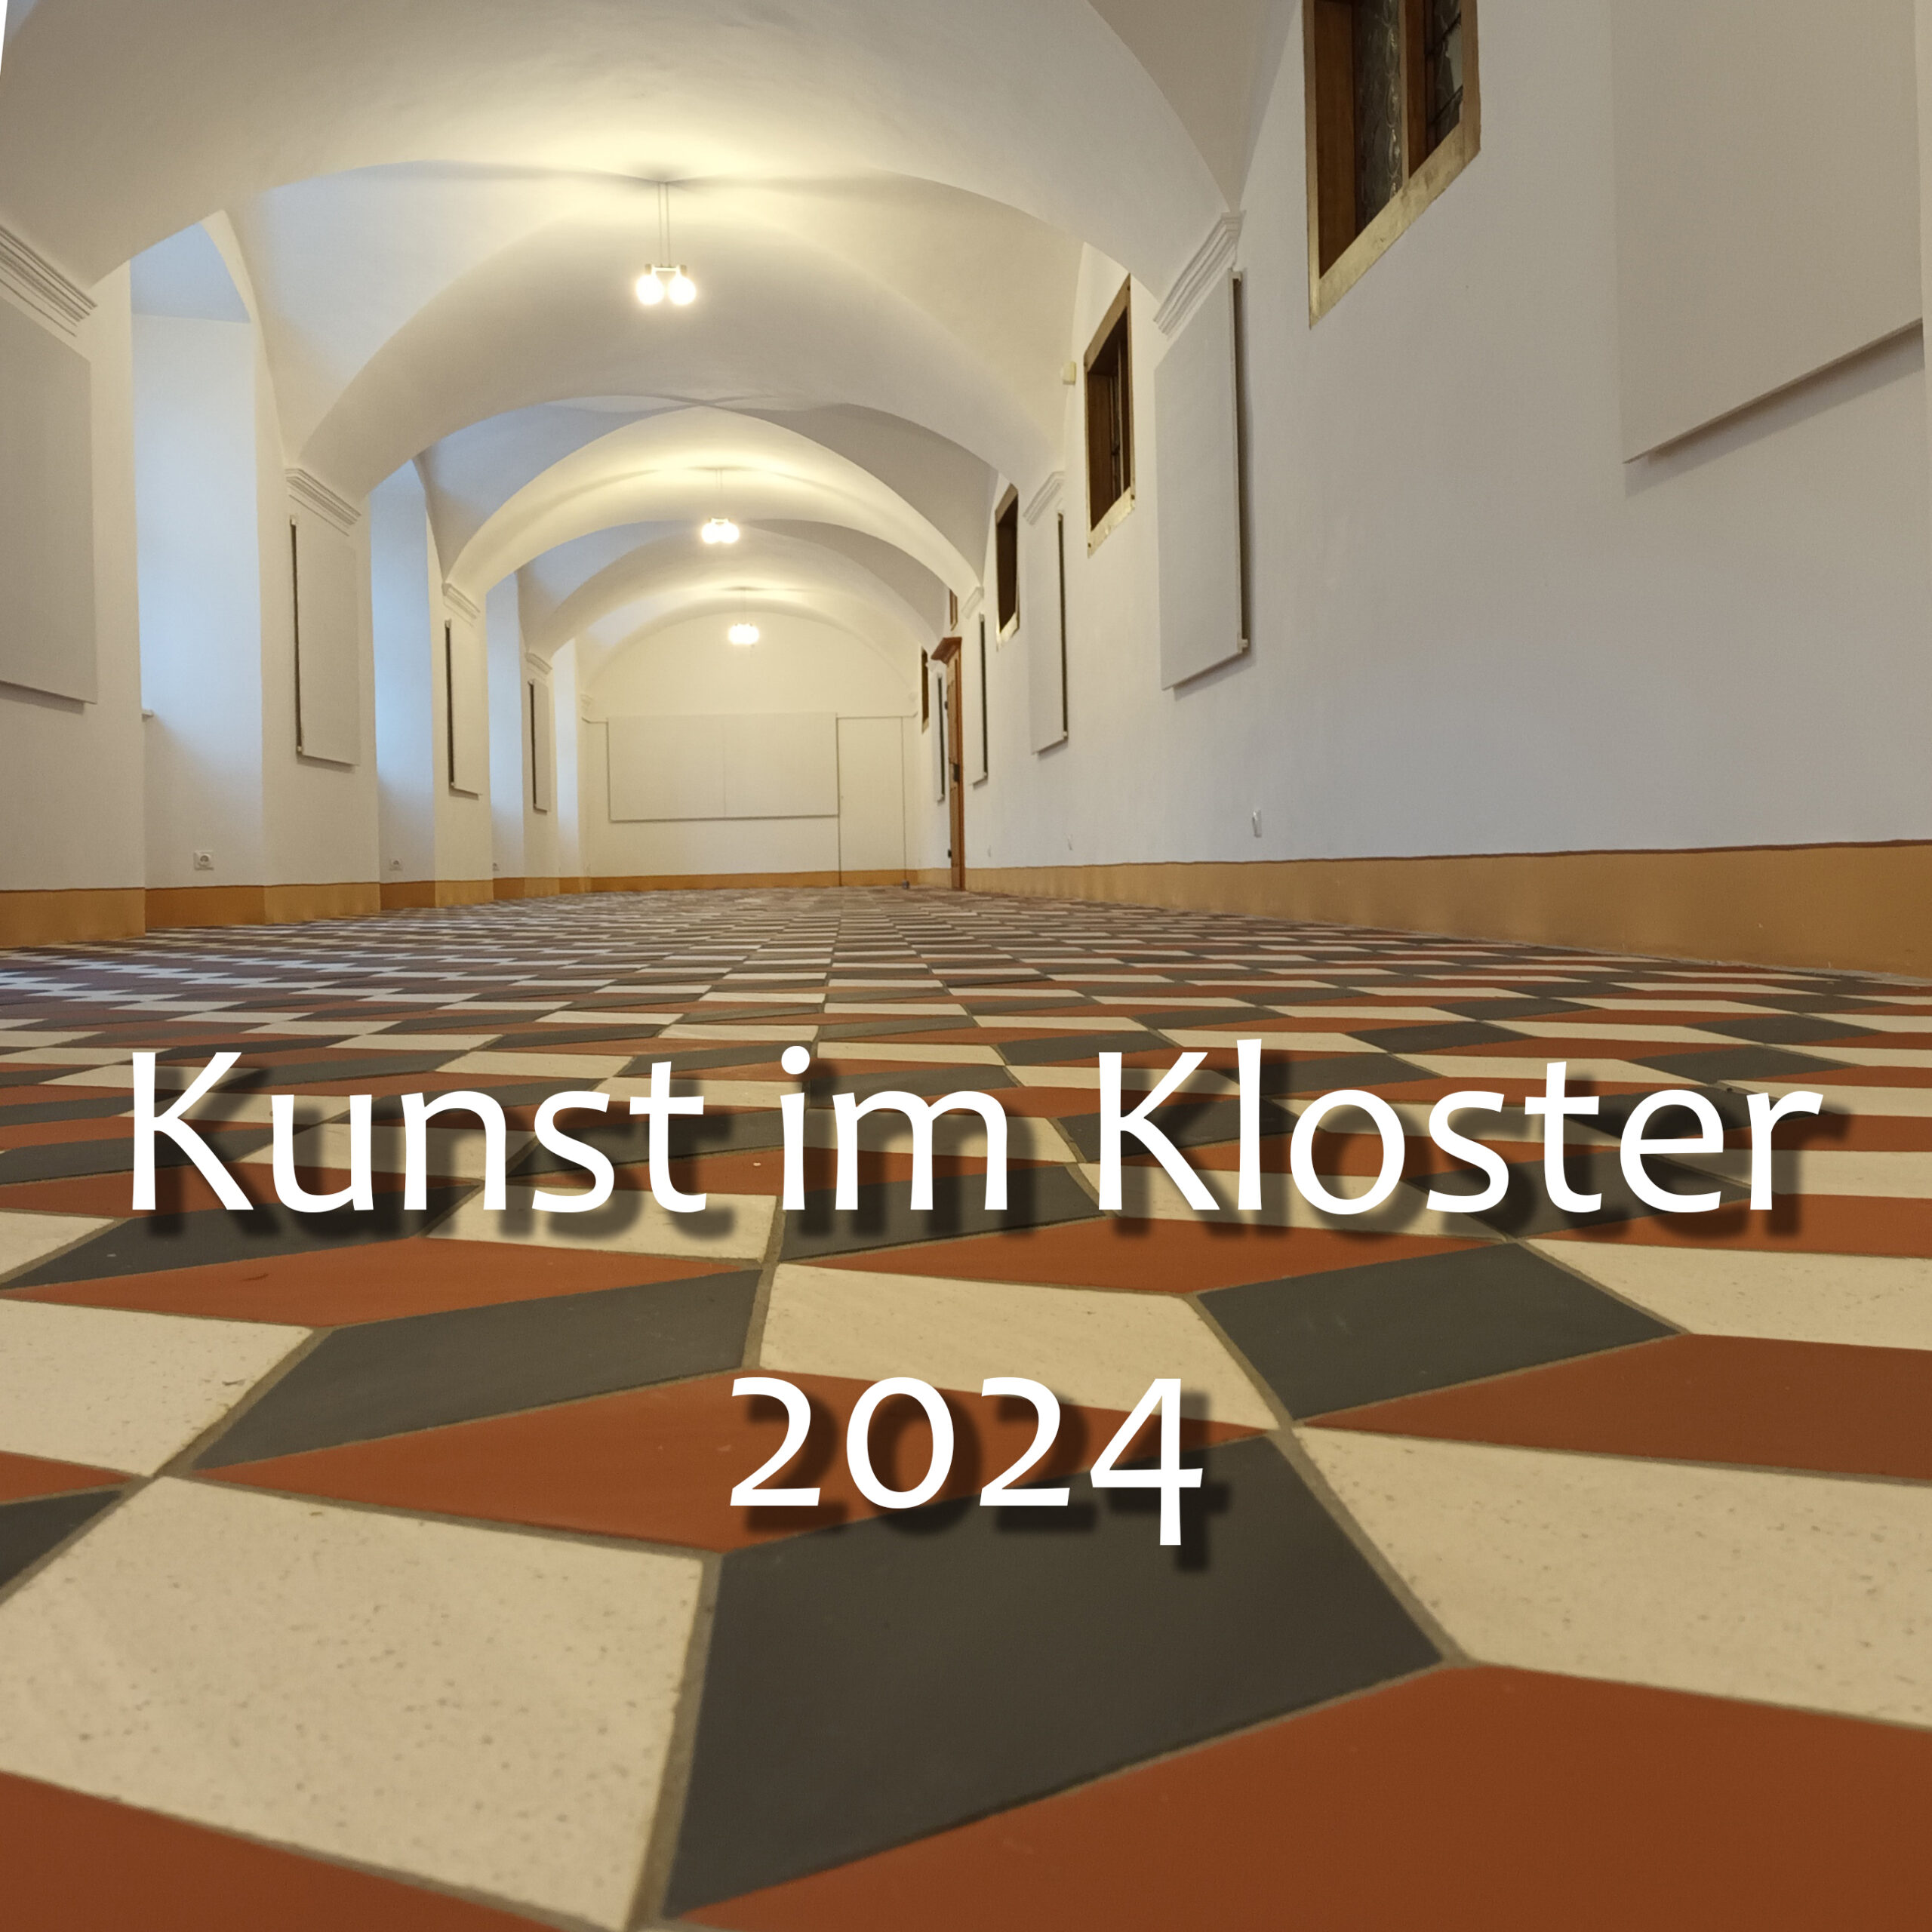 Kunst im Kloster 2024